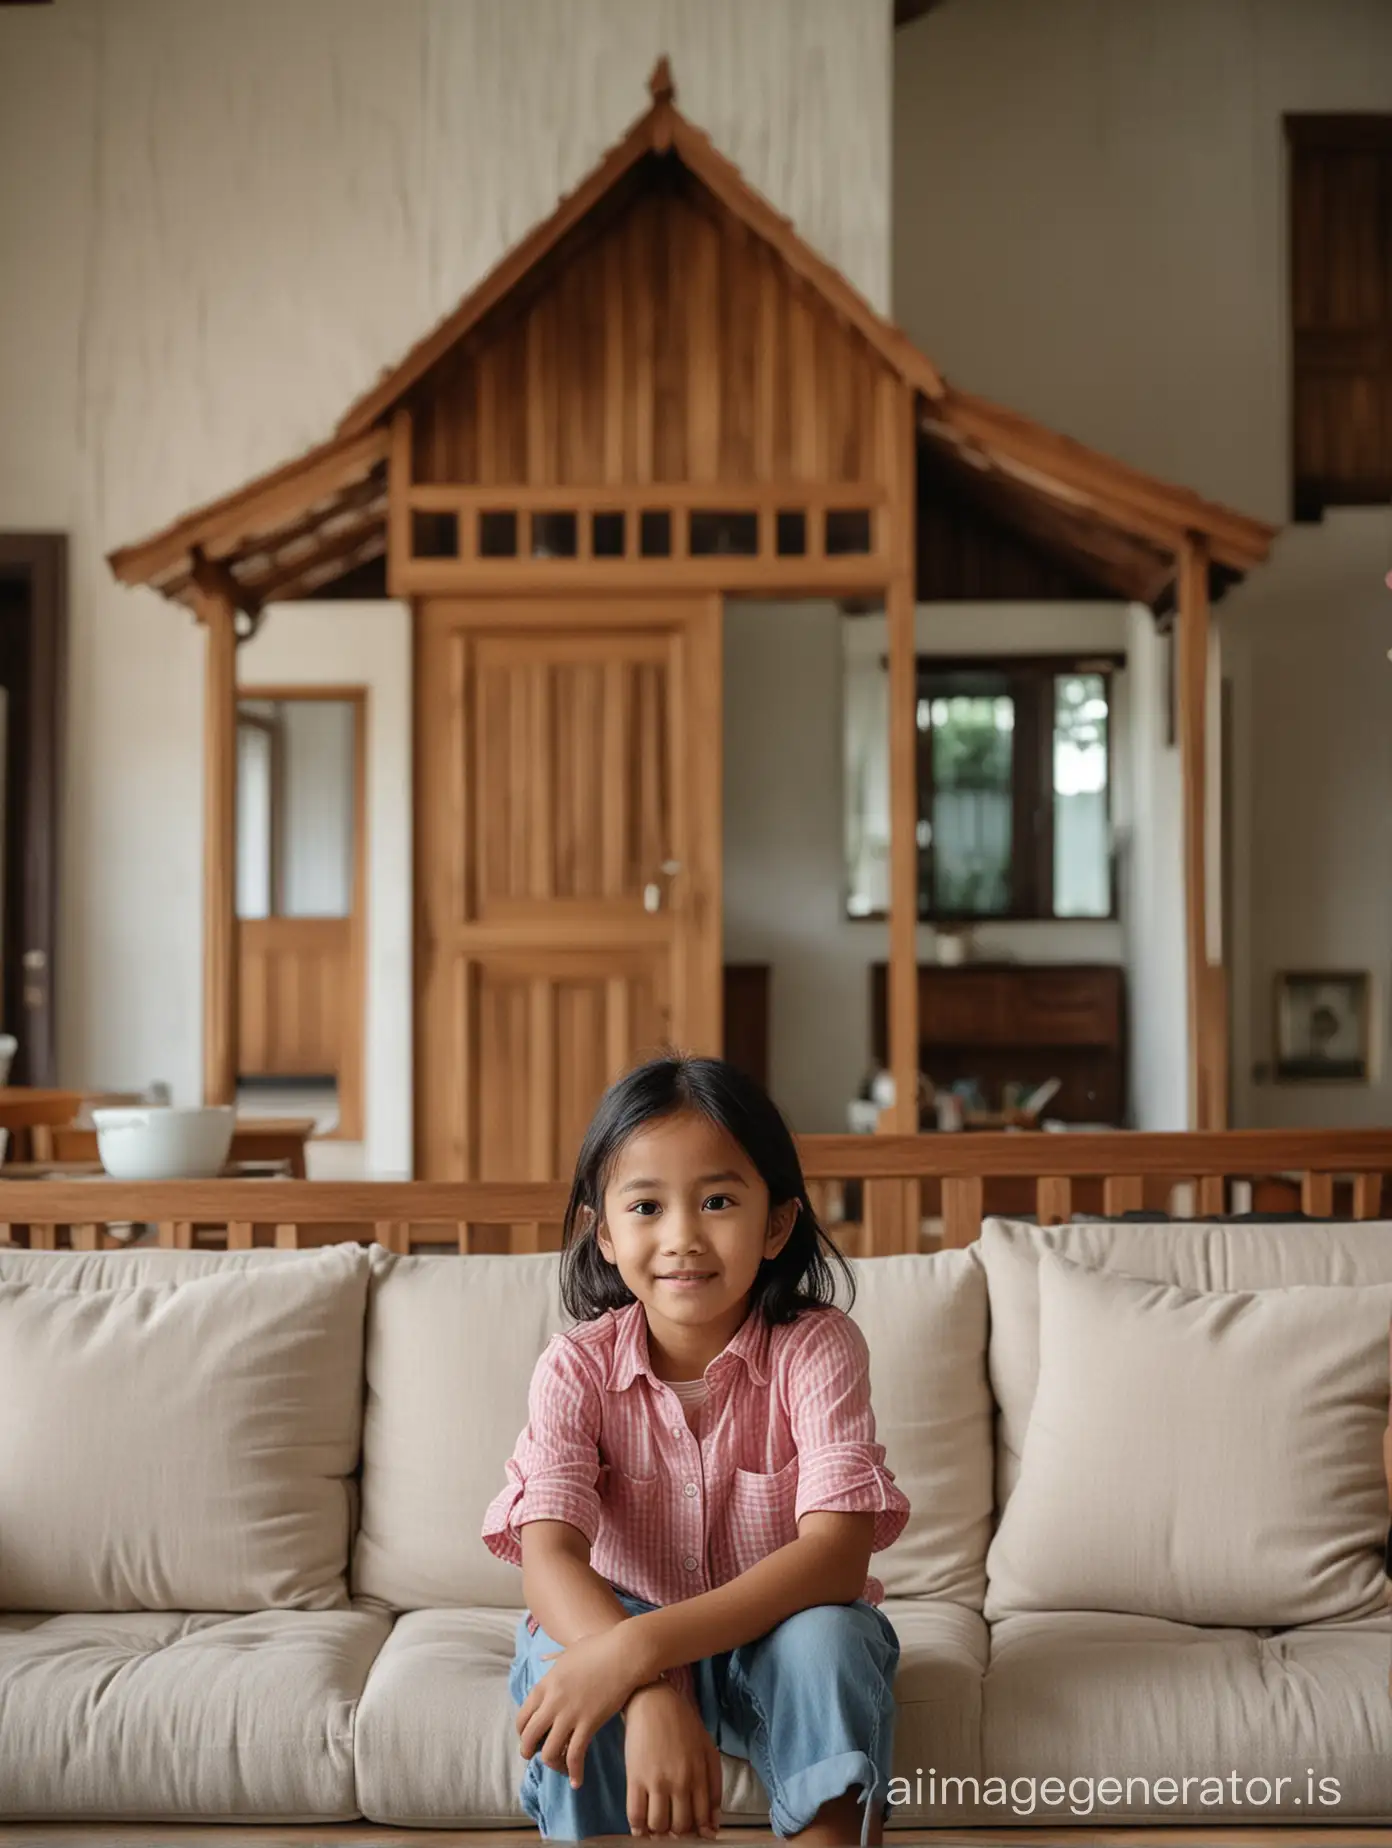 Seorang anak perempuan indonesia berusia 6 tahun pakaian casual duduk di sofa dengan background rumah kayu klasik